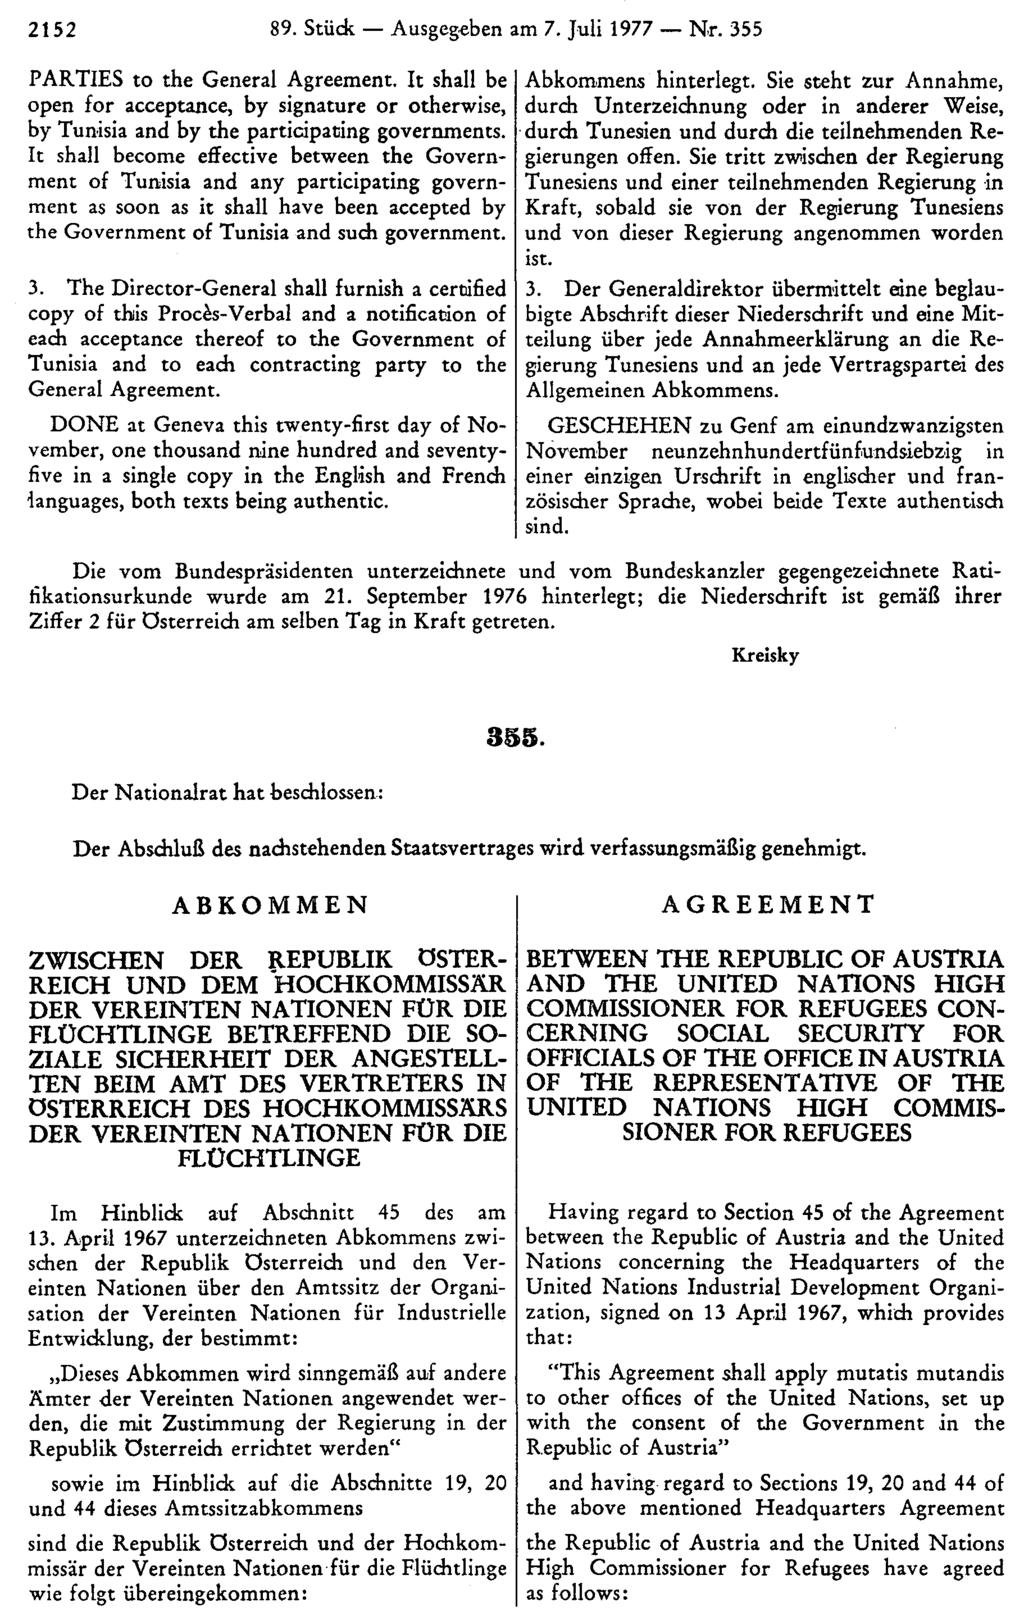 2152 89. Stück Ausgegeben am 7. Juli 1977 Nr. 355 Abkommens hinterlegt. Sie steht zur Annahme, durch Unterzeichnung oder in anderer Weise, durch Tunesien und durch die teilnehmenden Regierungen offen.